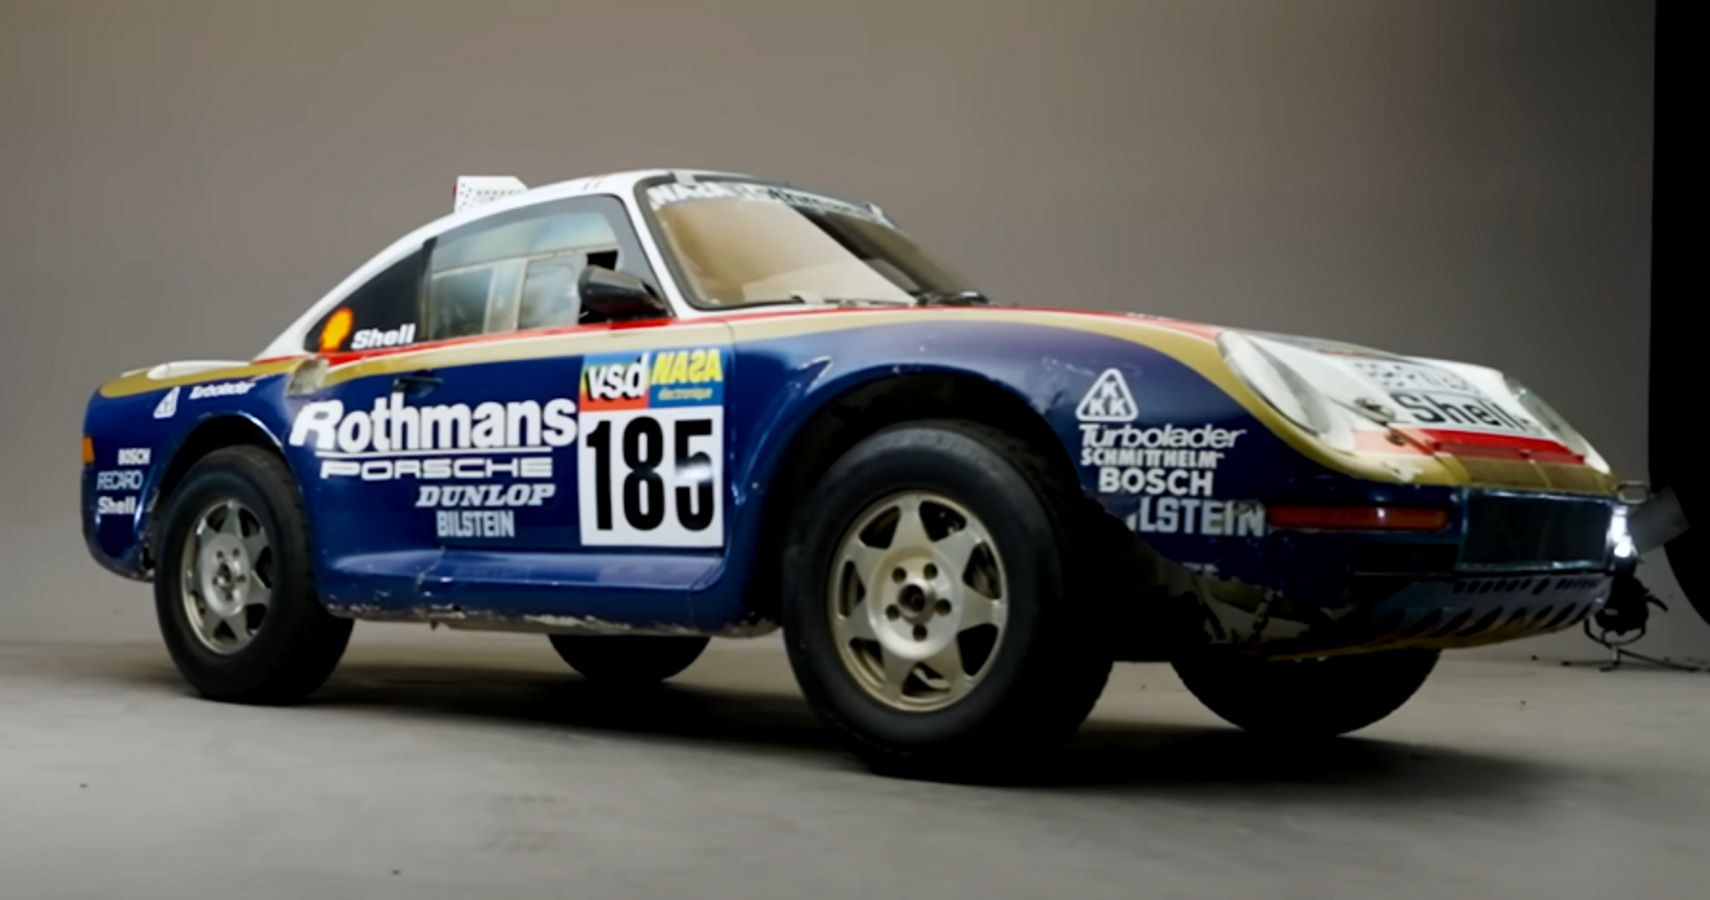 The #185 Porsche 959 Dakar Racer before restoration